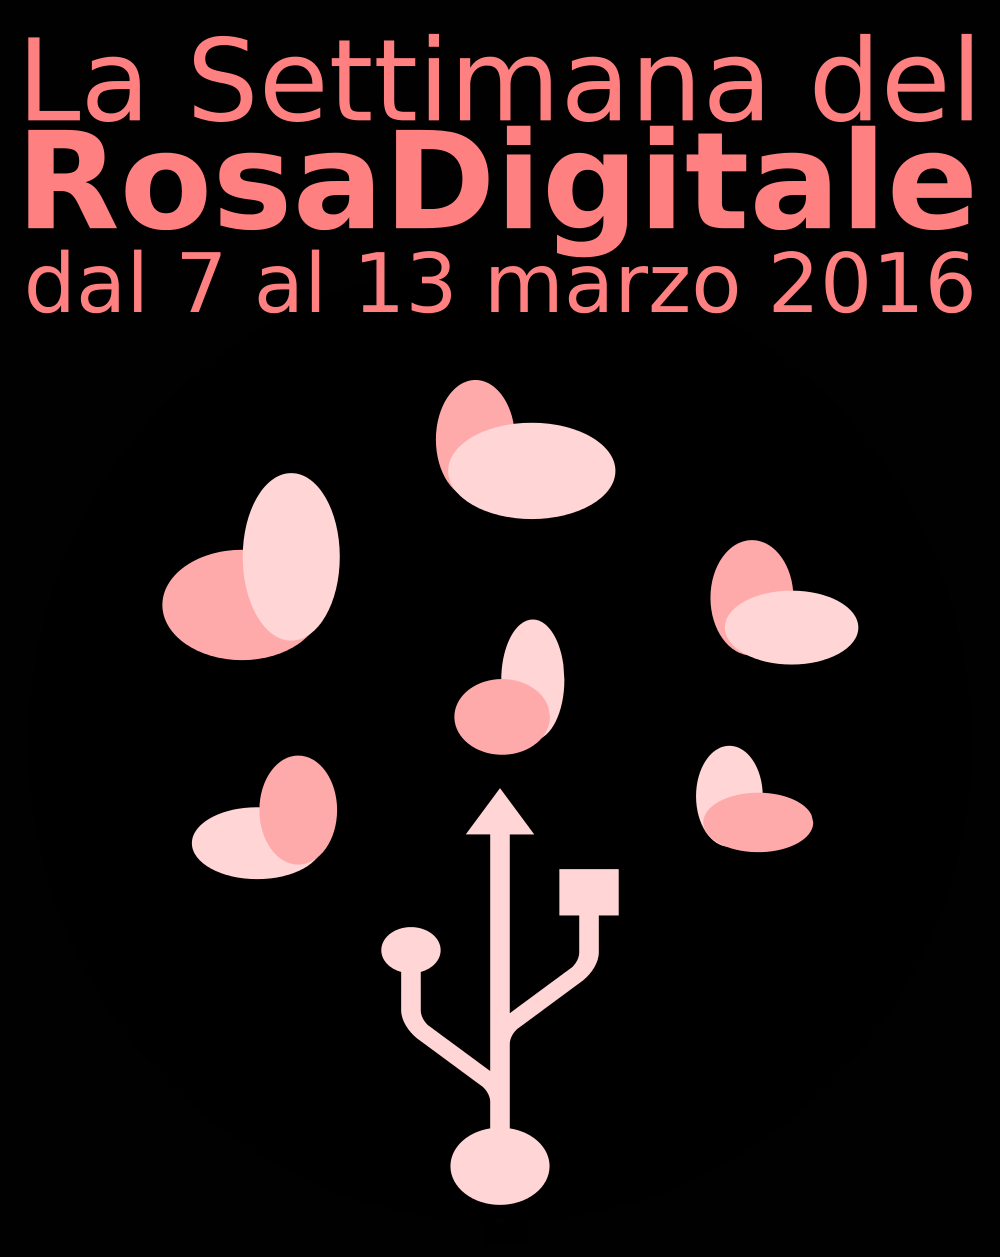 Anche a Torino la settimana della Rosa Digitale